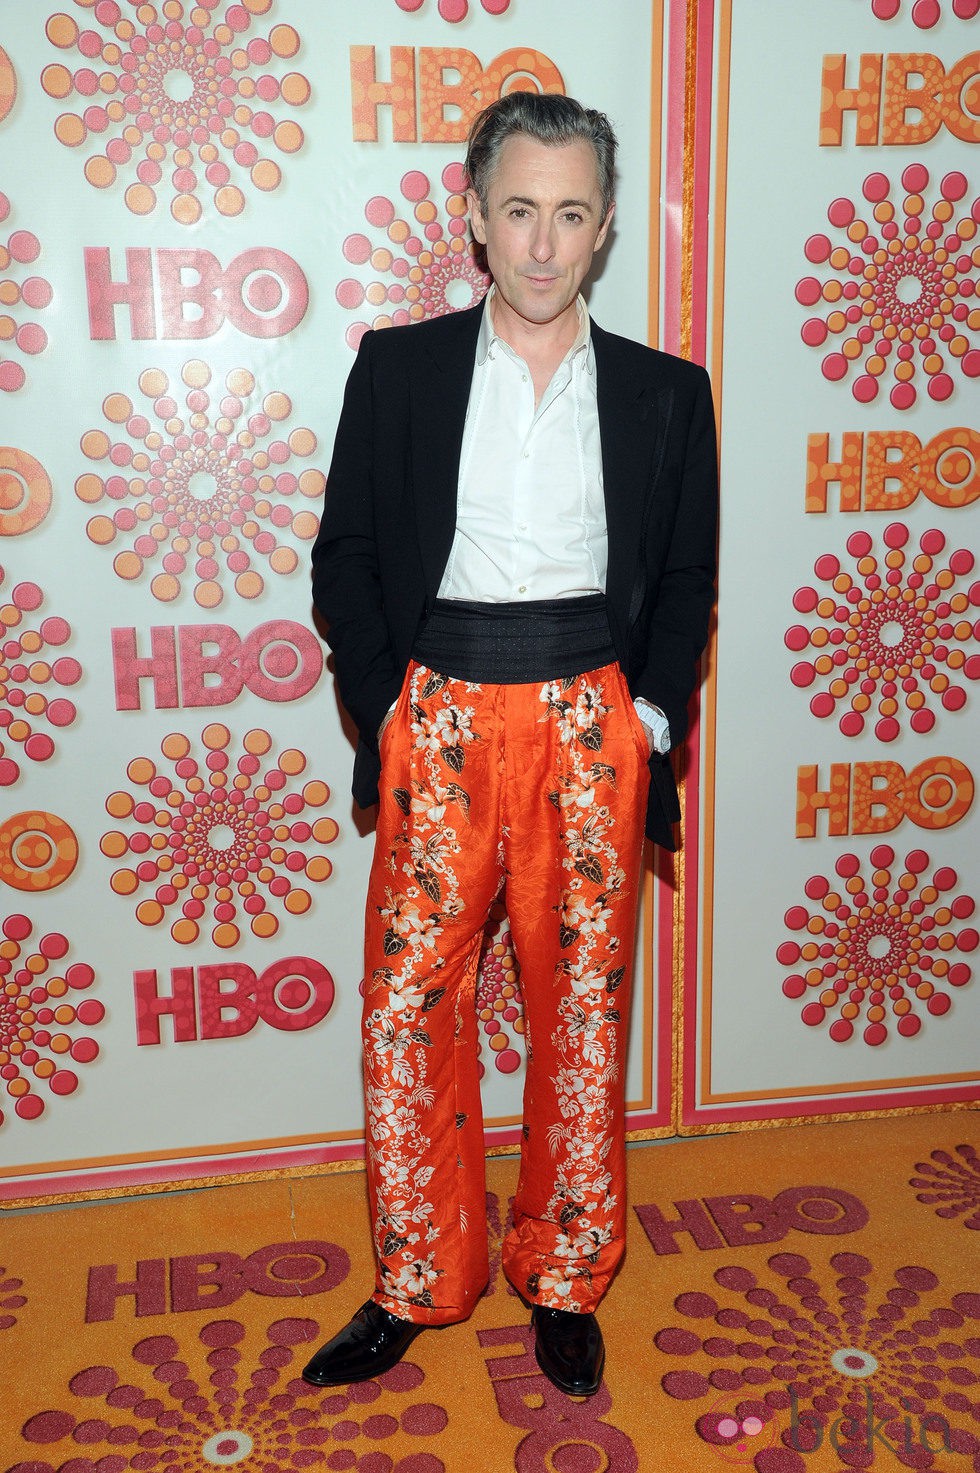 Alan Cumming en la fiesta HBO post Emmy 2011